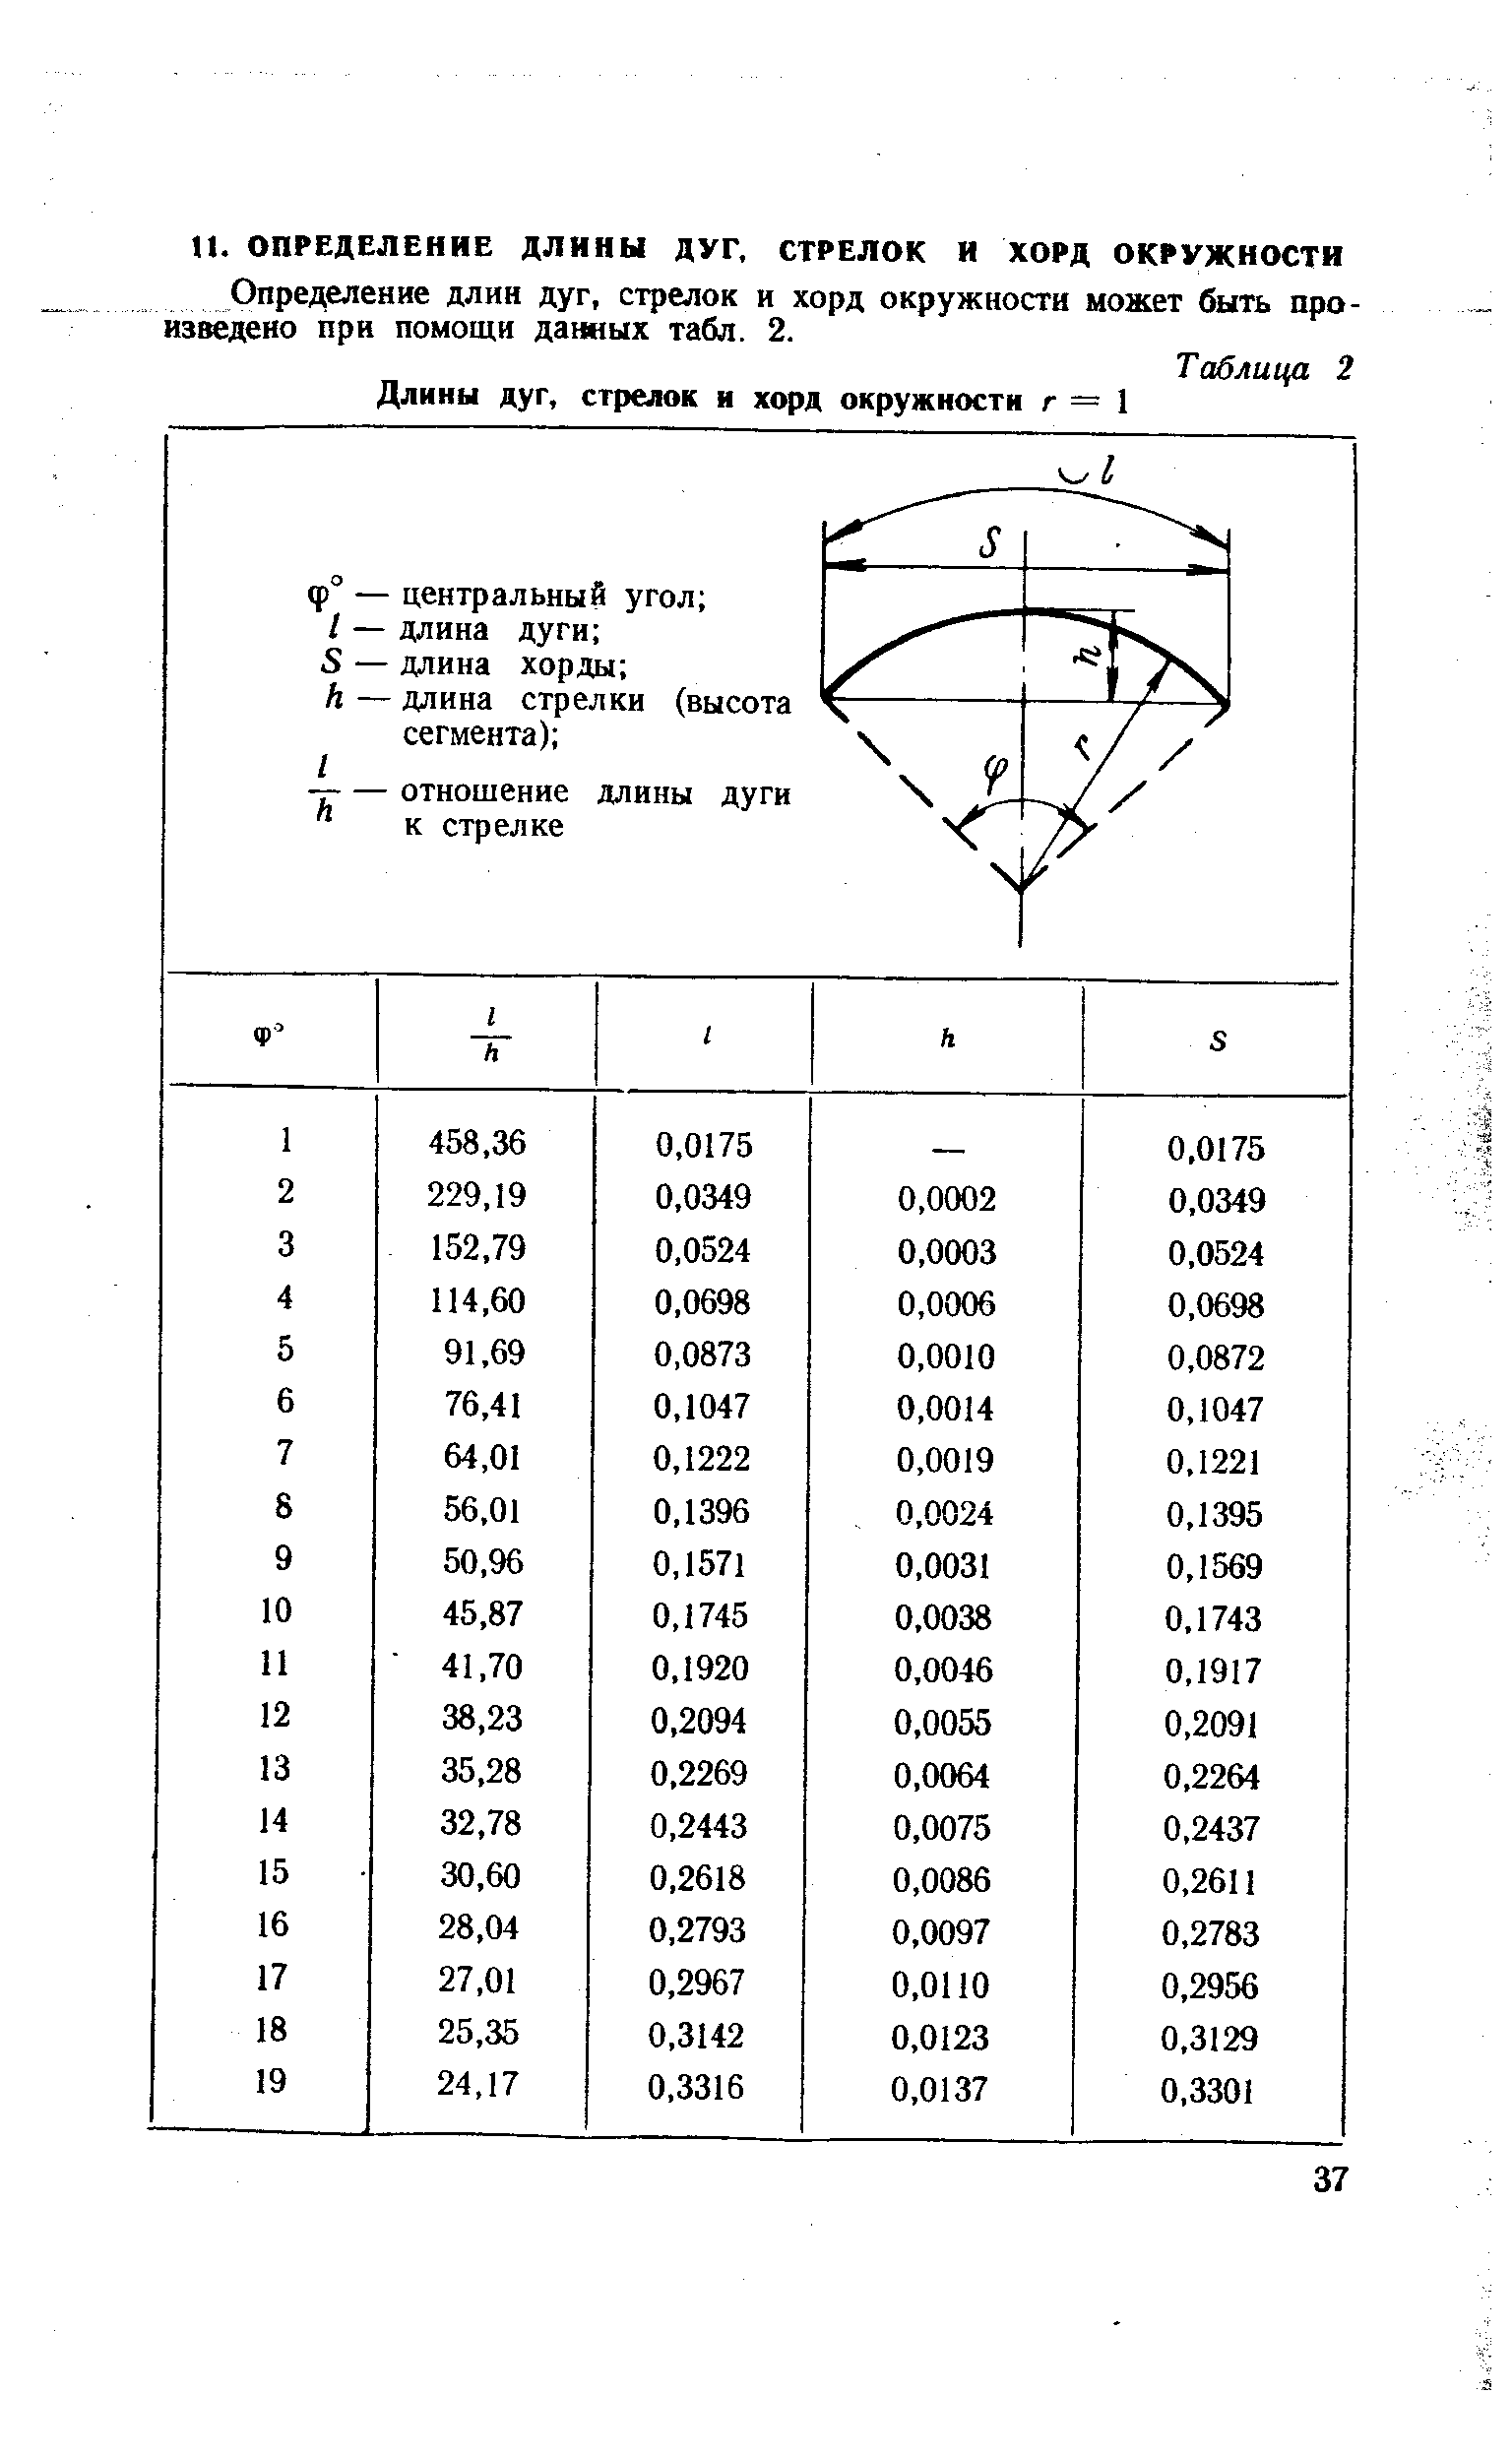 Определение длин дуг, стрелок и хорд окружности может быть произведено при помощи данных табл. 2.
